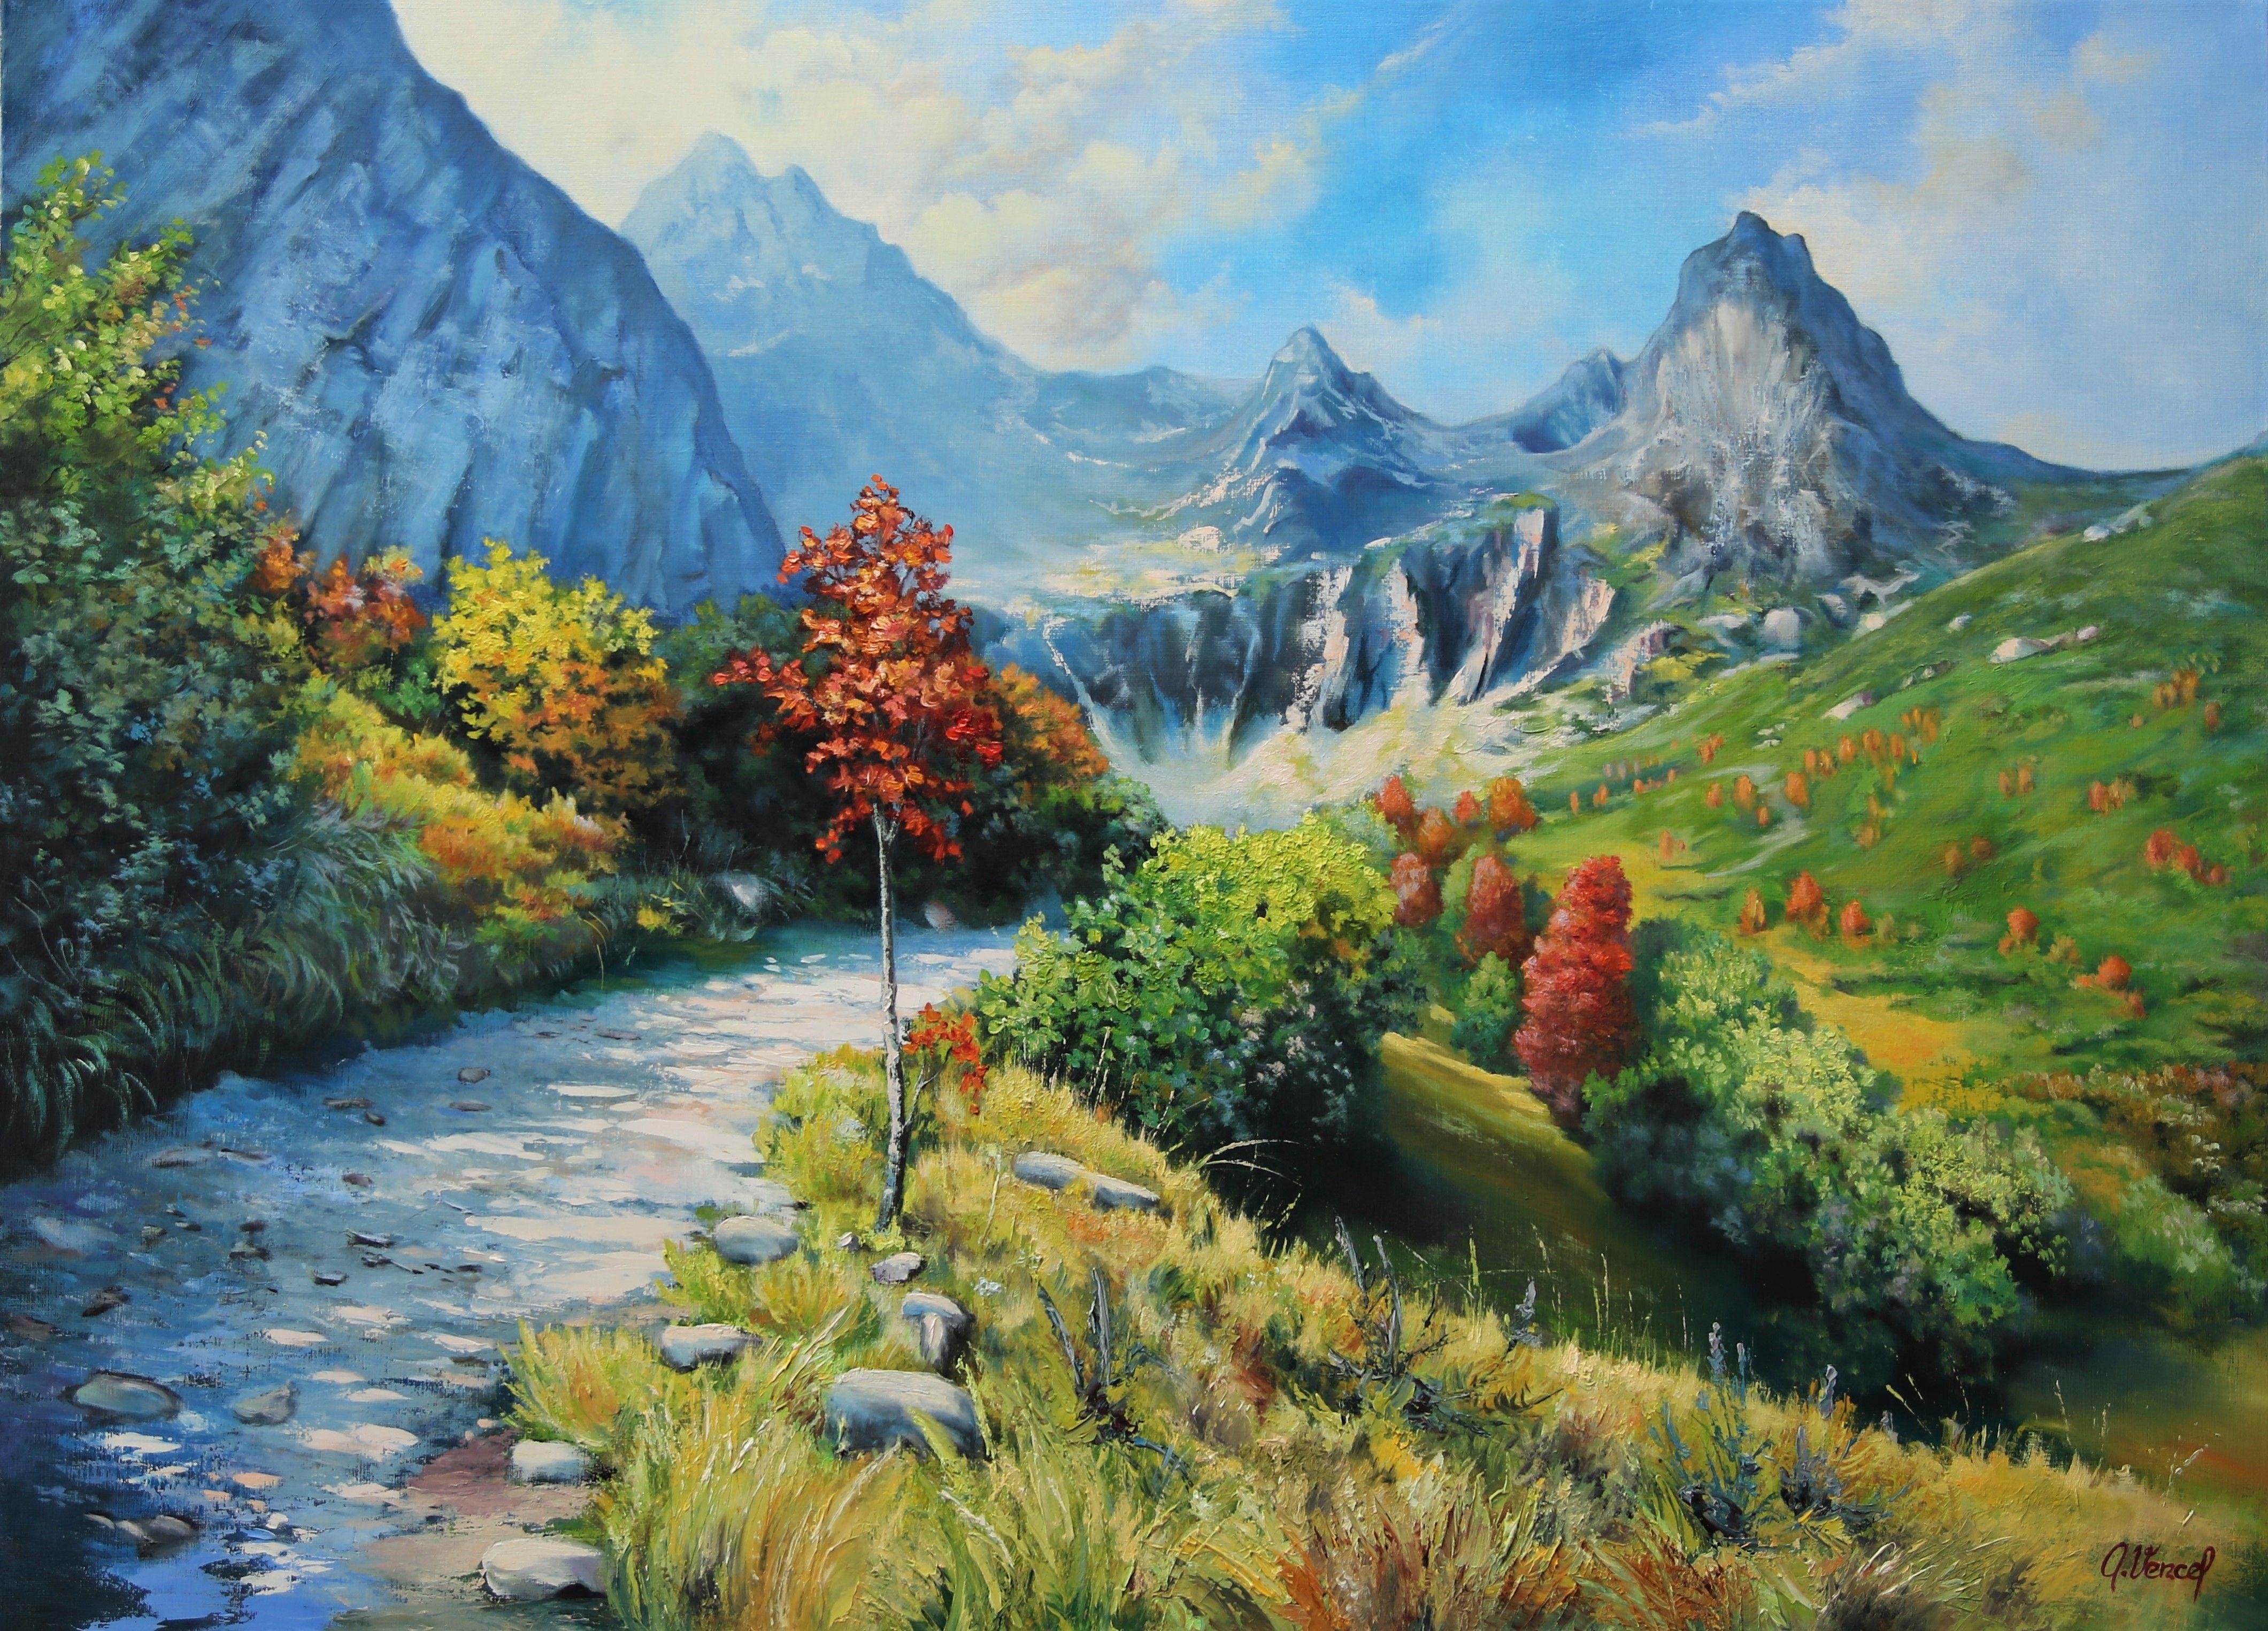 Attila Vencel Landscape Painting - Mountain landscape, Painting, Oil on Canvas